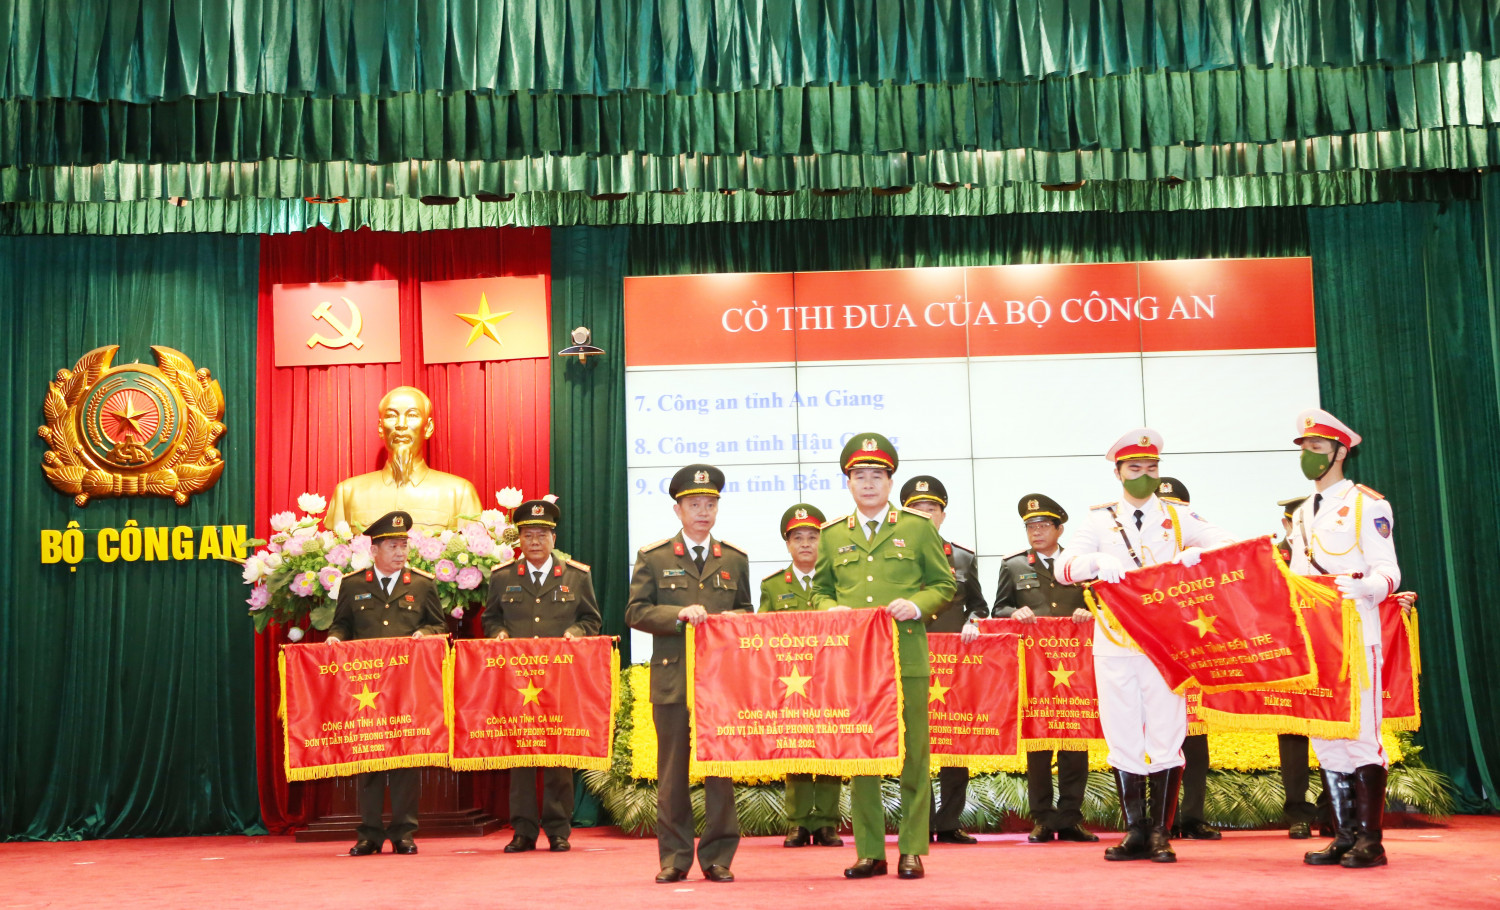 Đồng chí Thượng tá Huỳnh Việt Hòa, Giám đốc Công an tỉnh (hàng đầu, từ trái sang) nhận Cờ thi đua của Bộ Công an trong trong phong trào “Vì An ninh Tổ quốc” năm 2021.